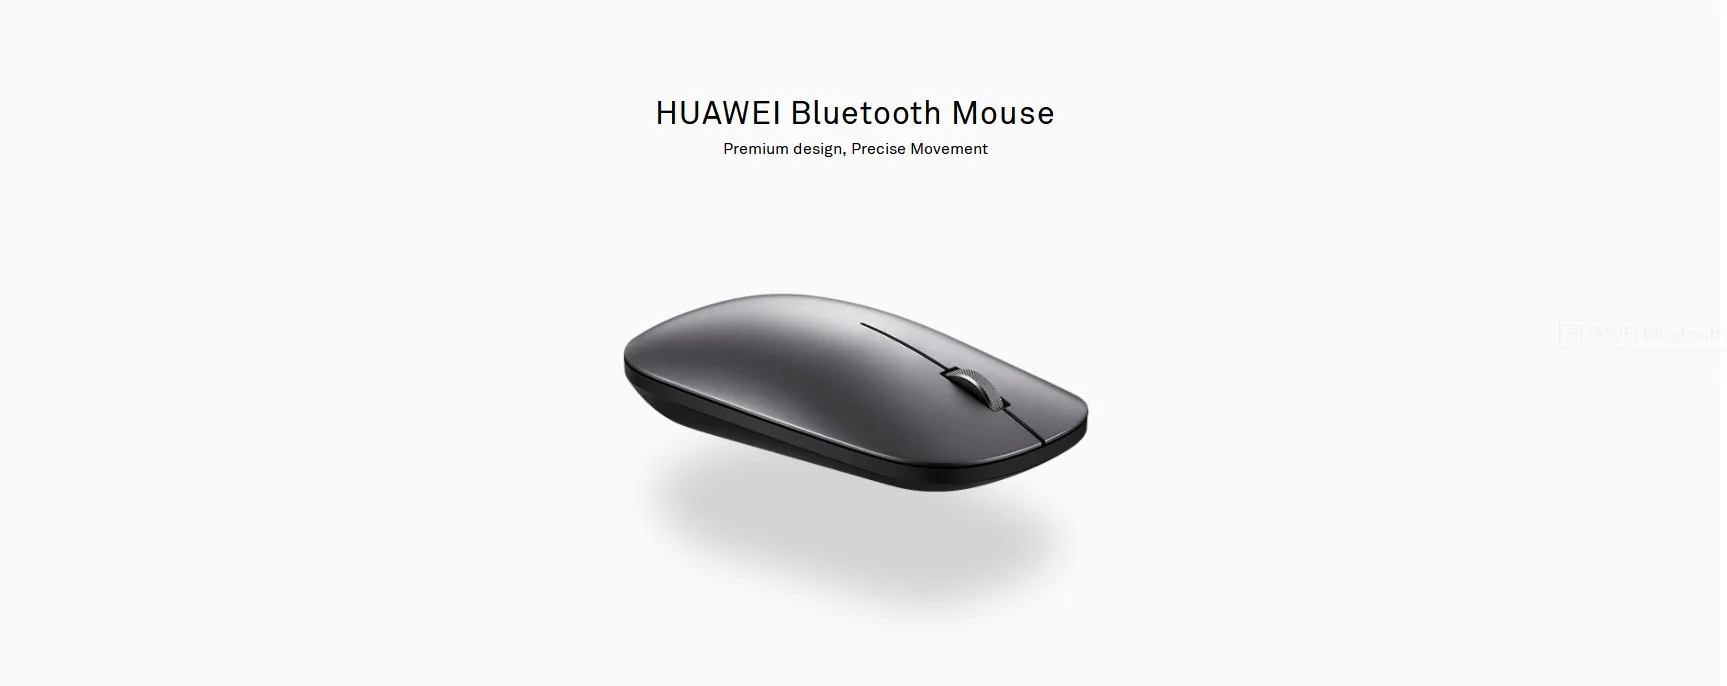 Оригинальная беспроводная bluetooth мышь huawei AF30 бизнес для huawei matebook D/E/X pro ноутбук тонкая беззвучная мышь